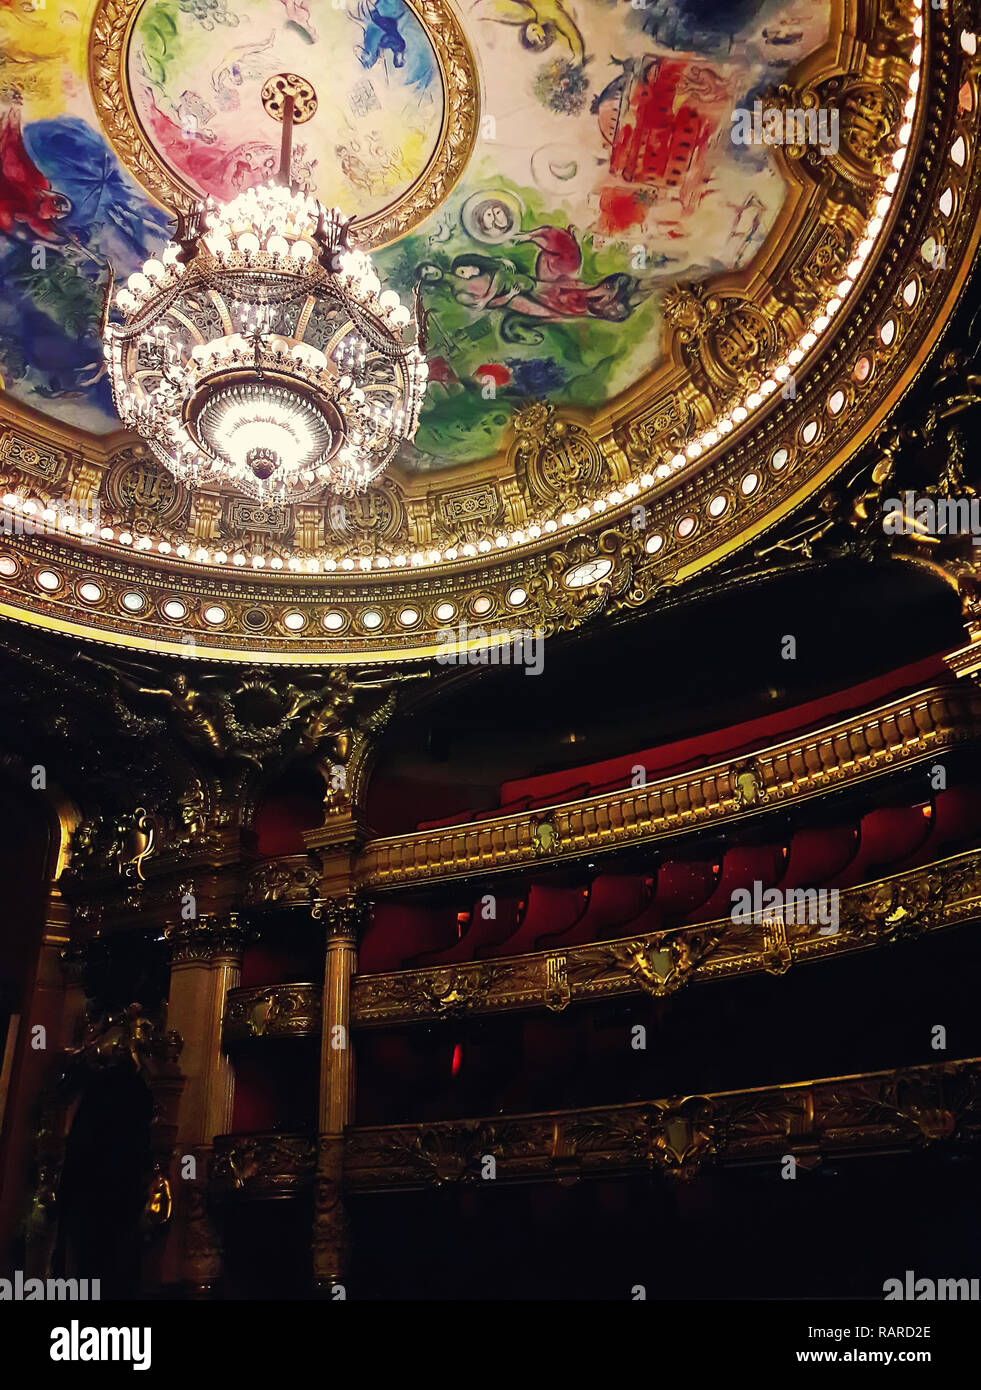 Auditorium im Inneren des Palastes Opera Garnier in Paris, Frankreich. Stockfoto